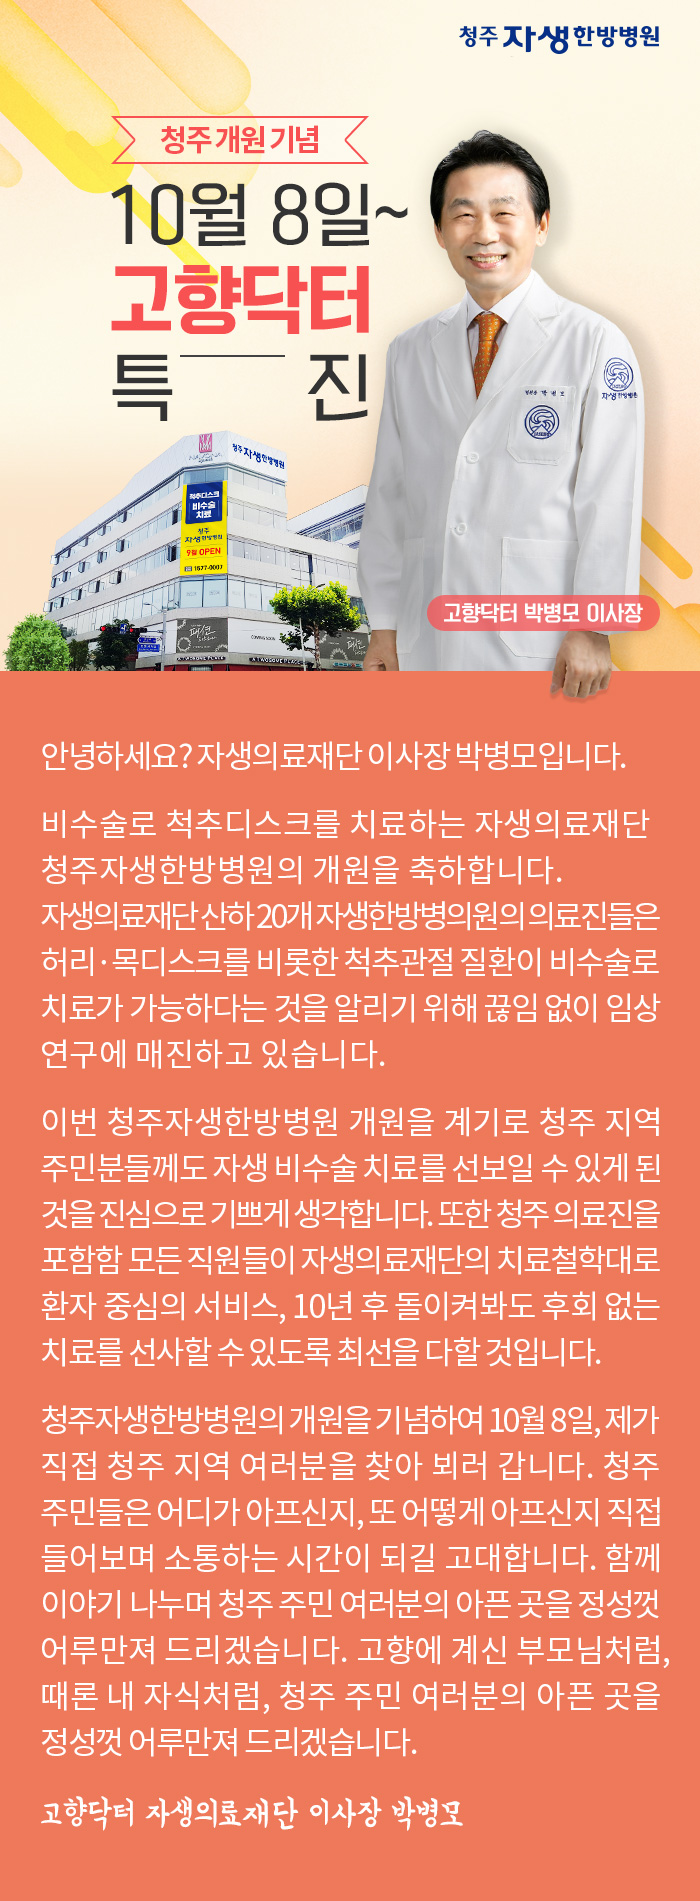 청주자생한방병원_청주 개원 기념, 고향닥터 박병모 이사장 특진(10월 8일부터)